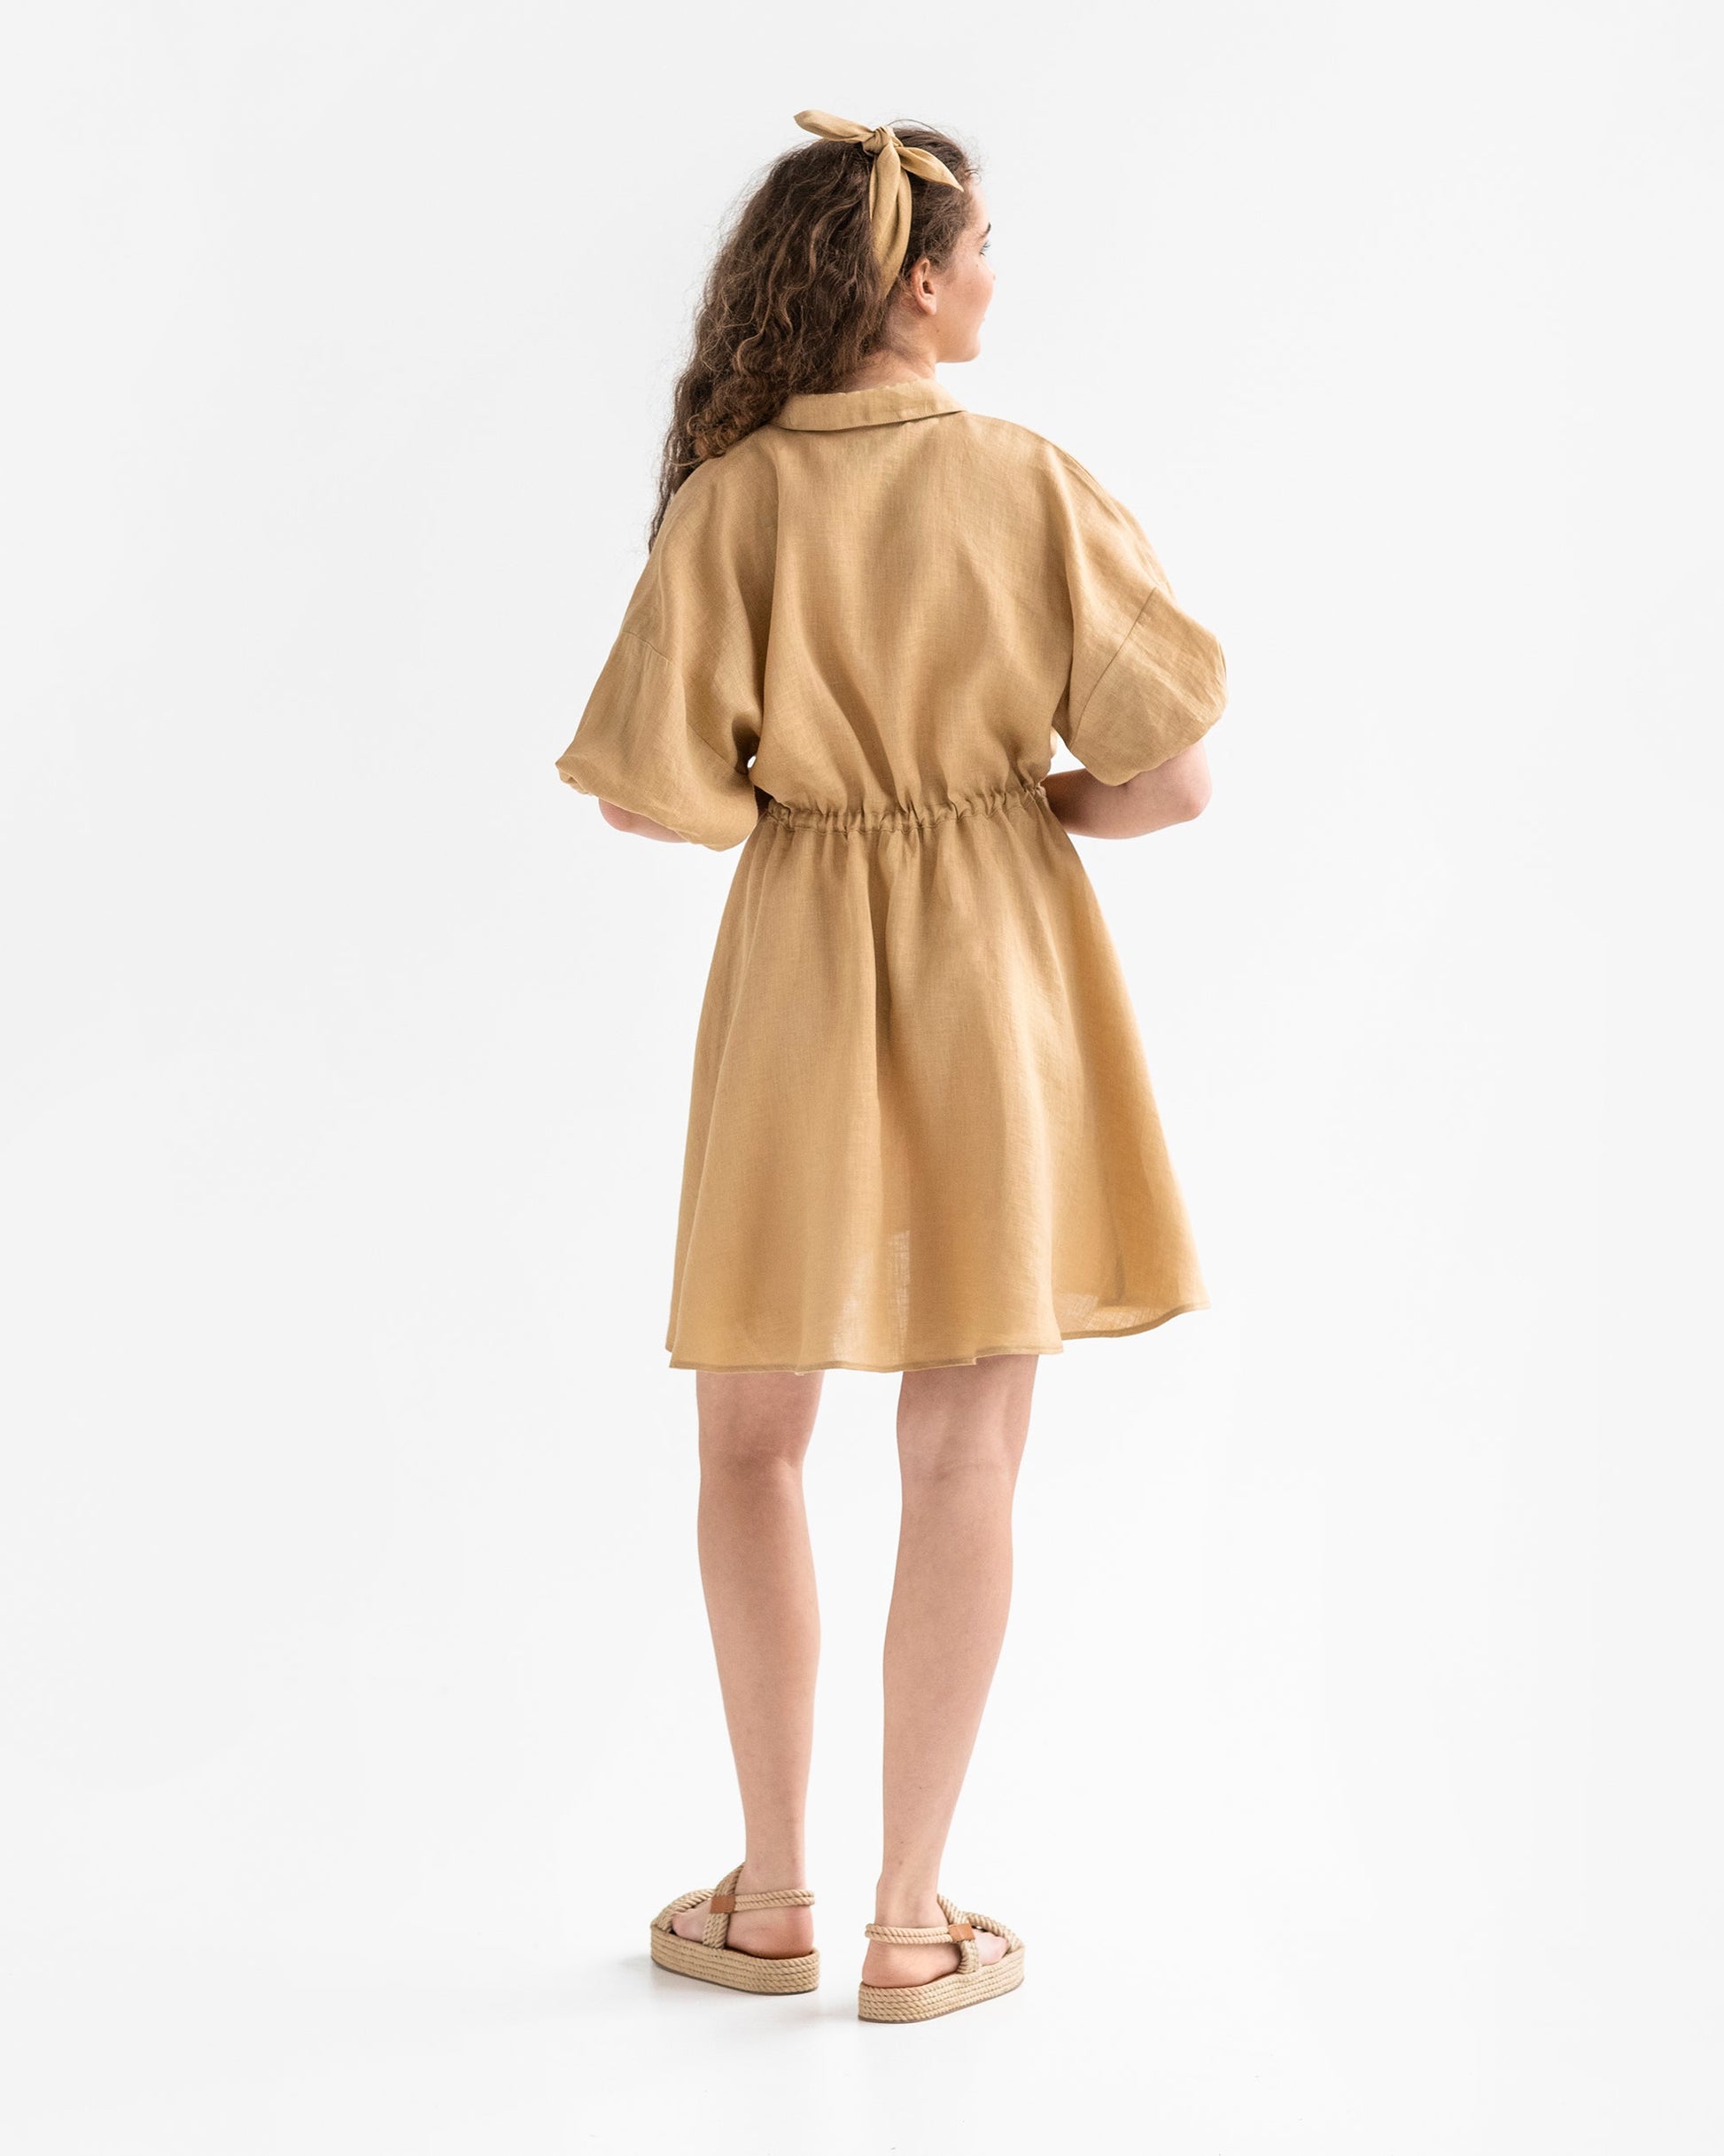 Linen shirt dress JULIEN in sandy beige - MagicLinen